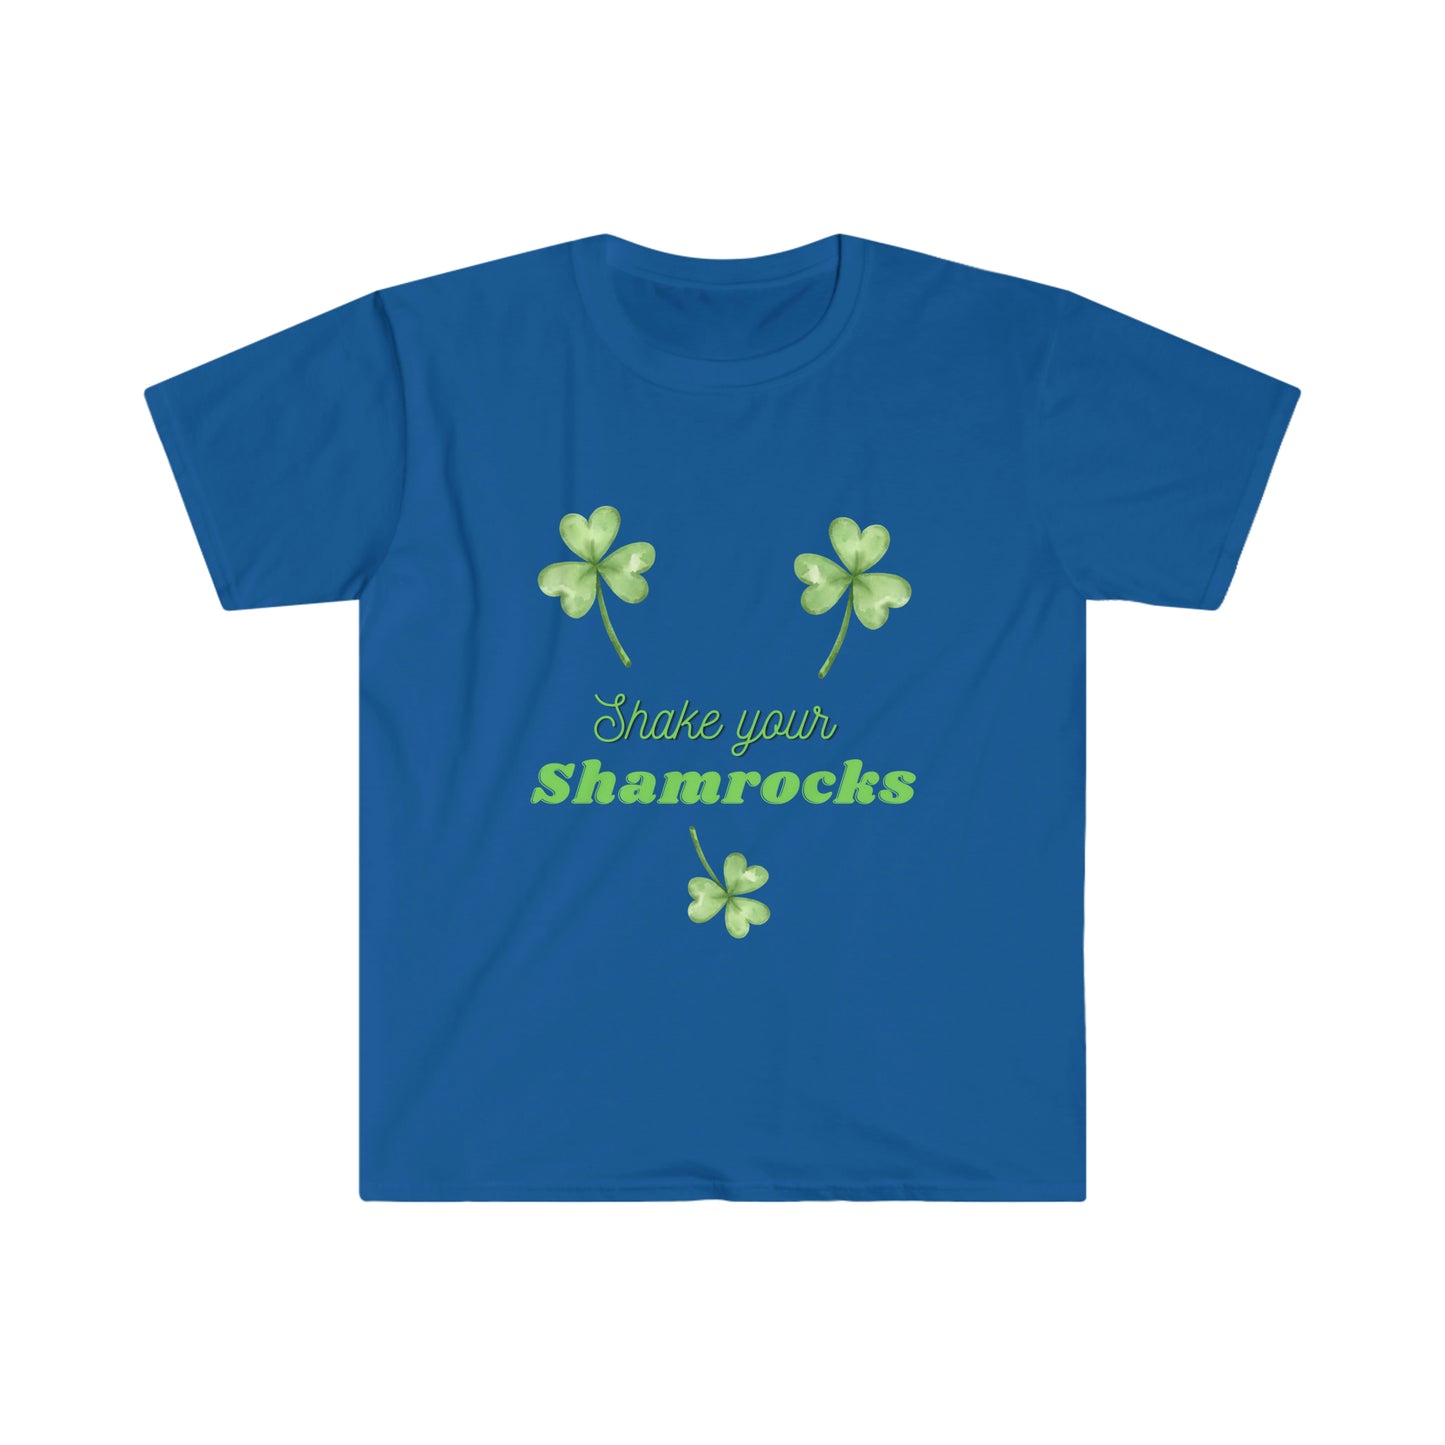 Shake your shamrocks T-shirt